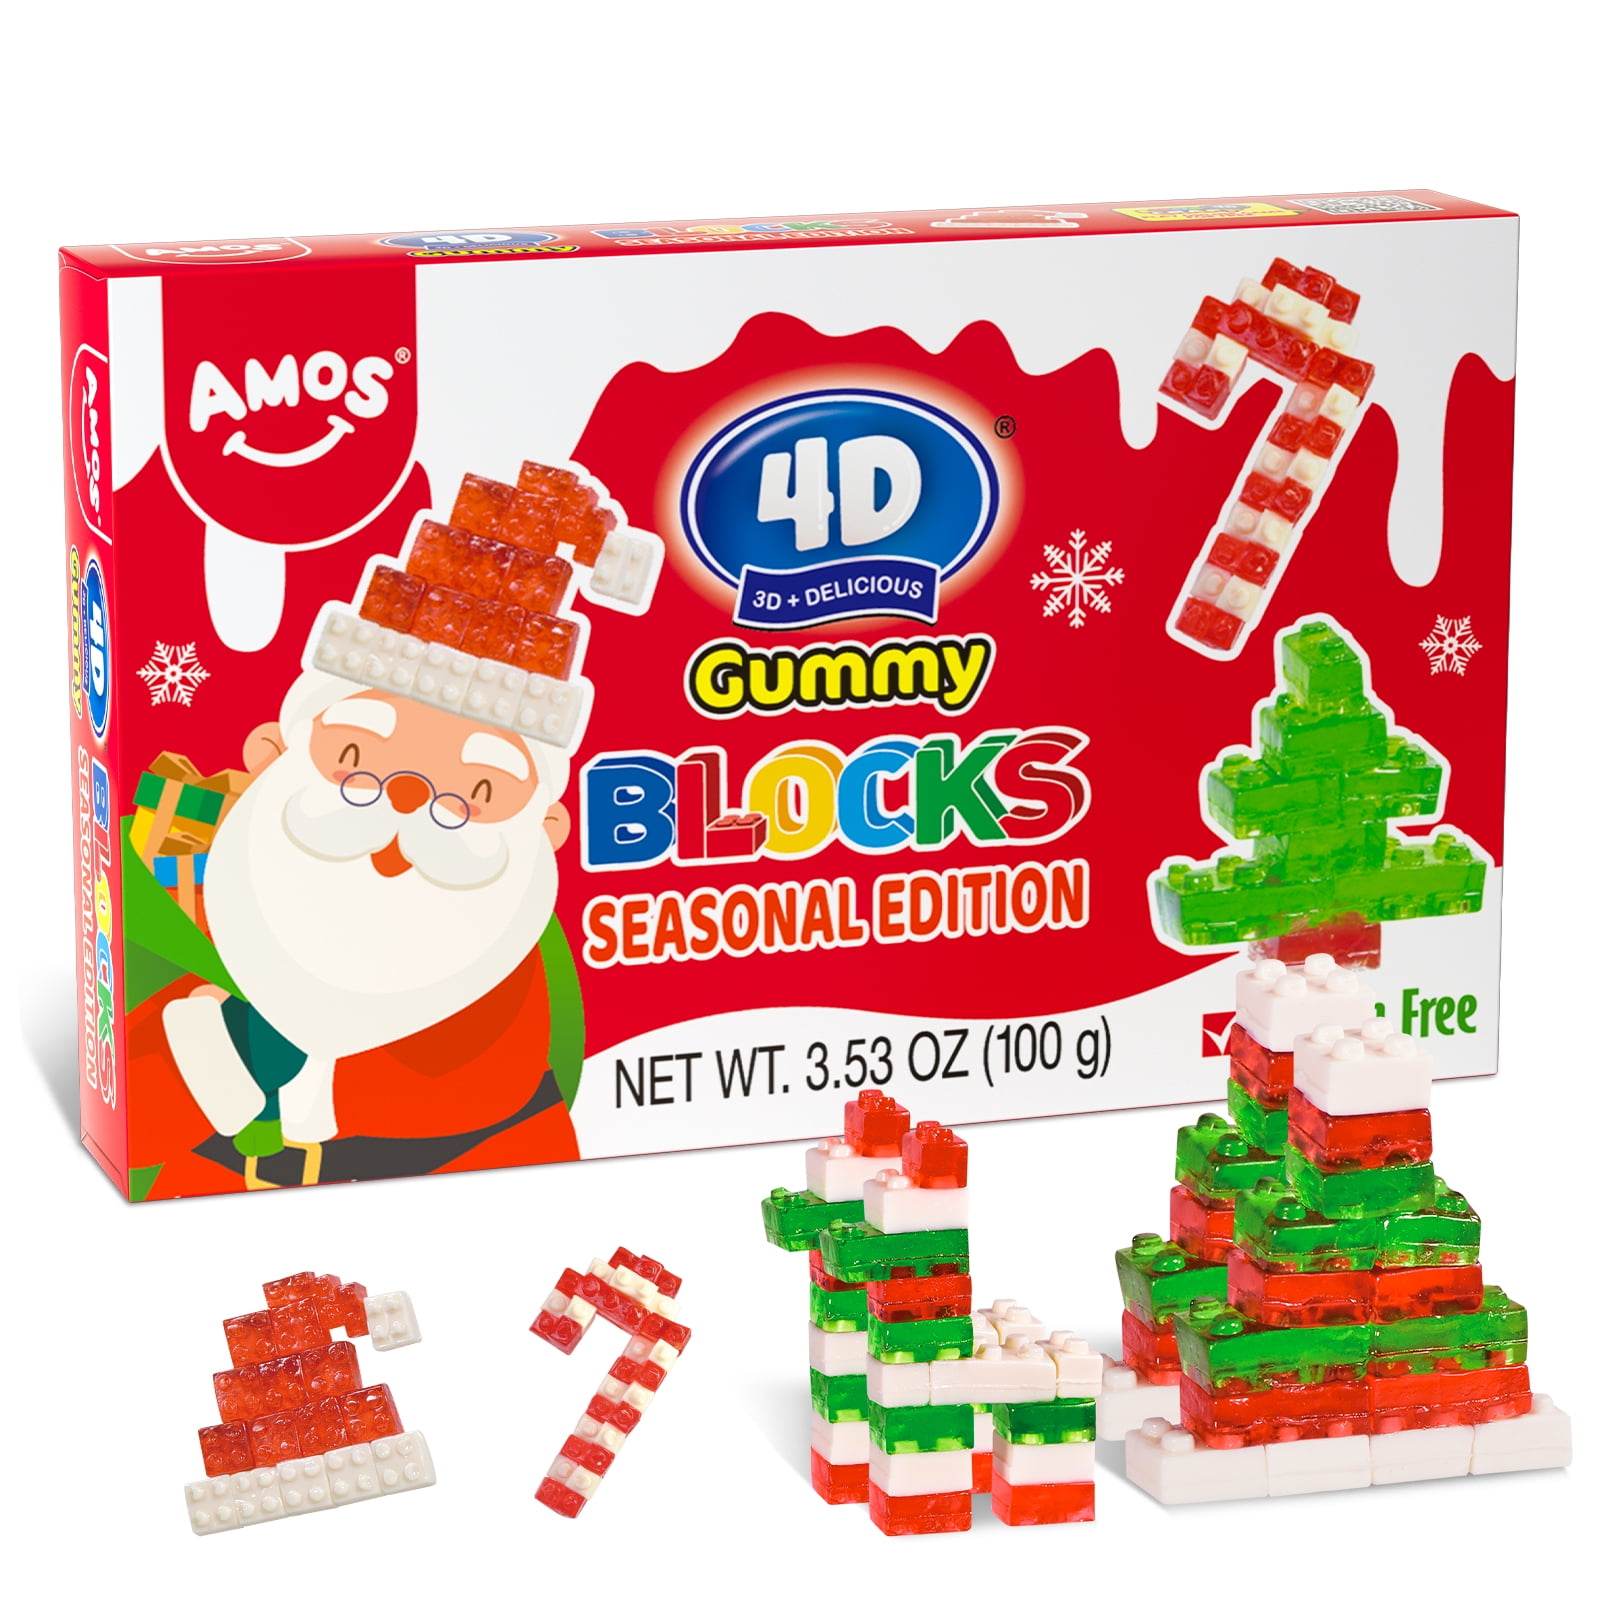 Amos Christmas Candy 4D Gummy Blocks Seasonal Edition, Christmas Gift ...